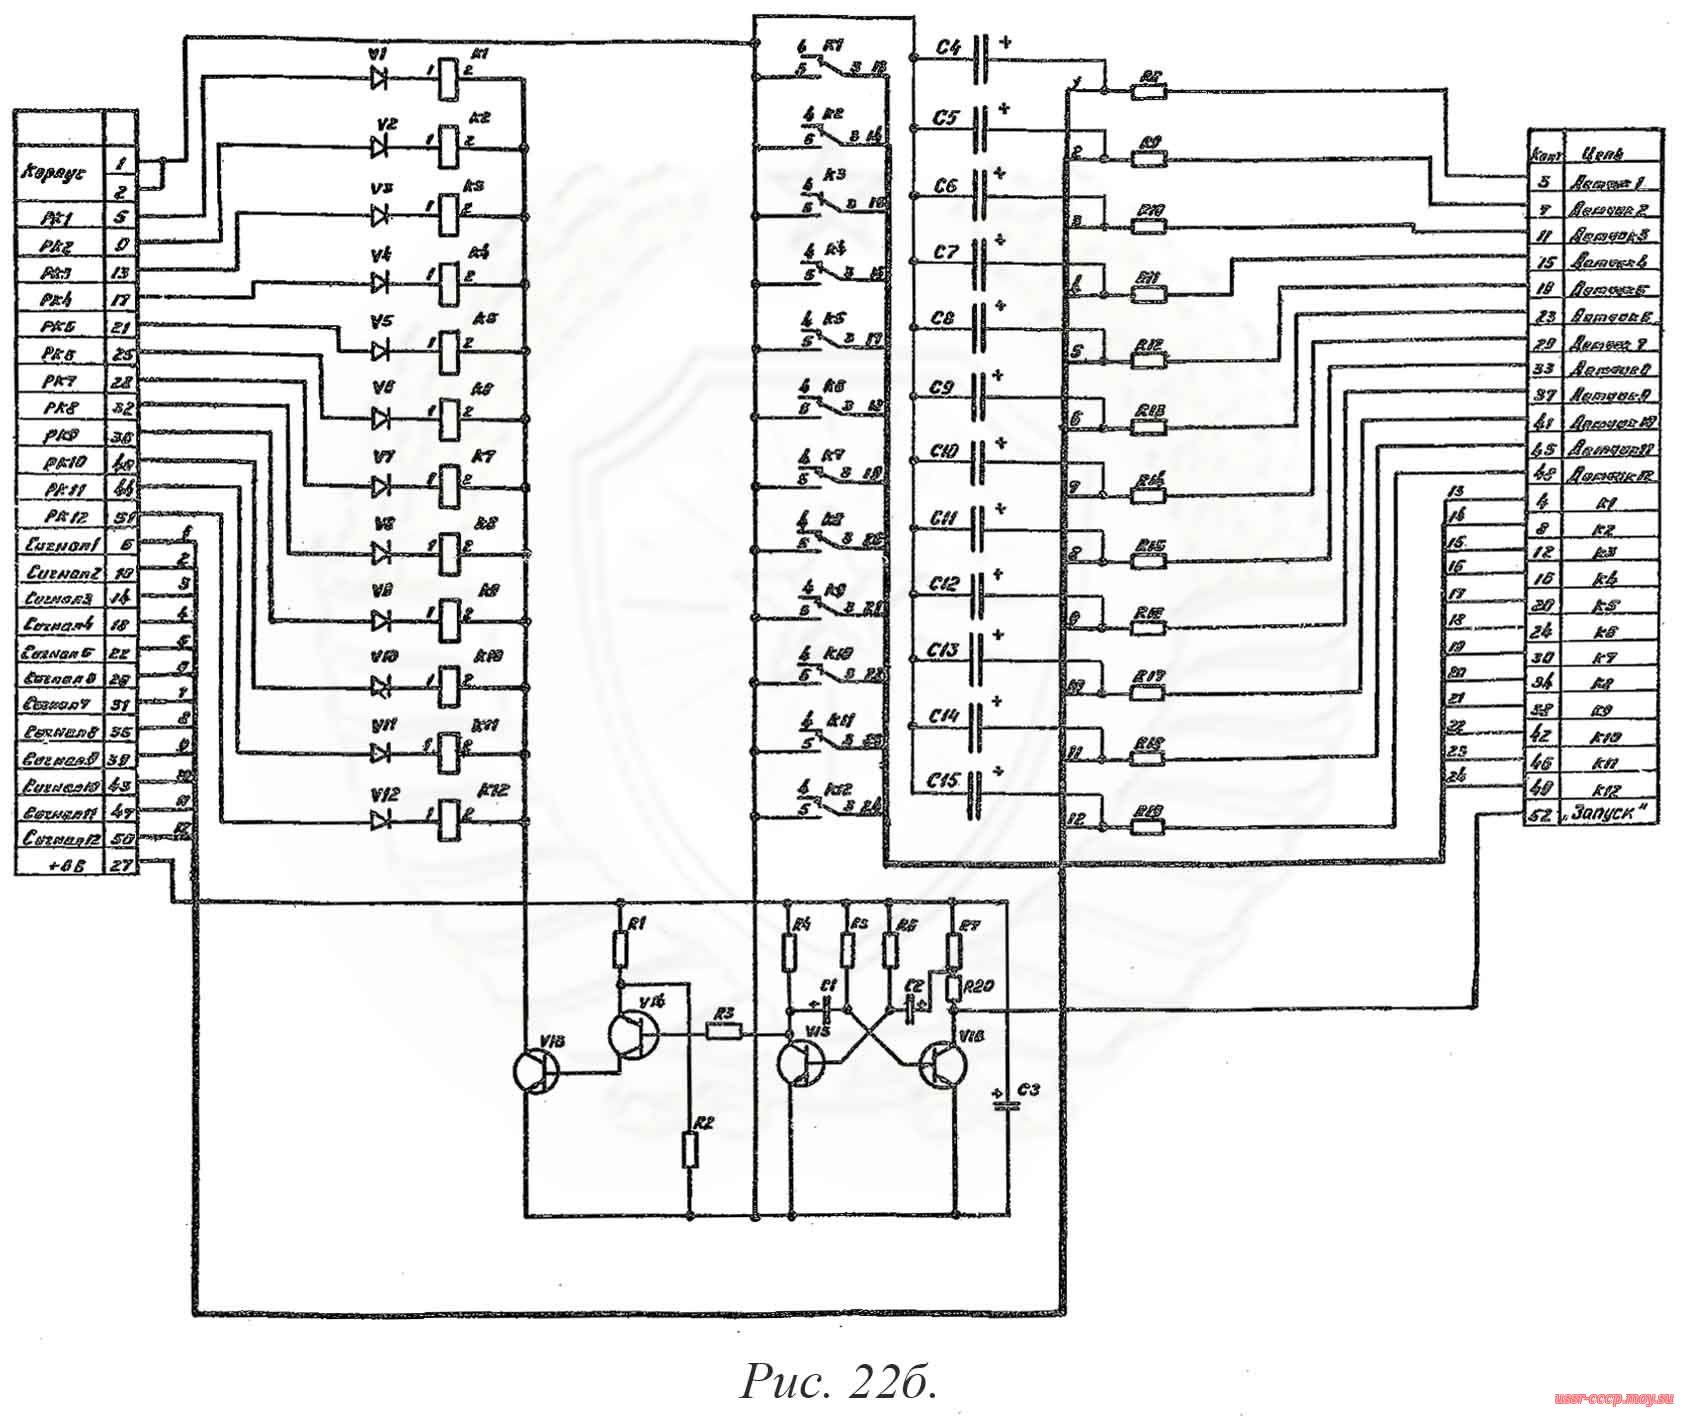 Рис. 22б. Принципиальная электрическая схема коммутатора 6Л6.617.025 распределительного щитка РЩ-1.